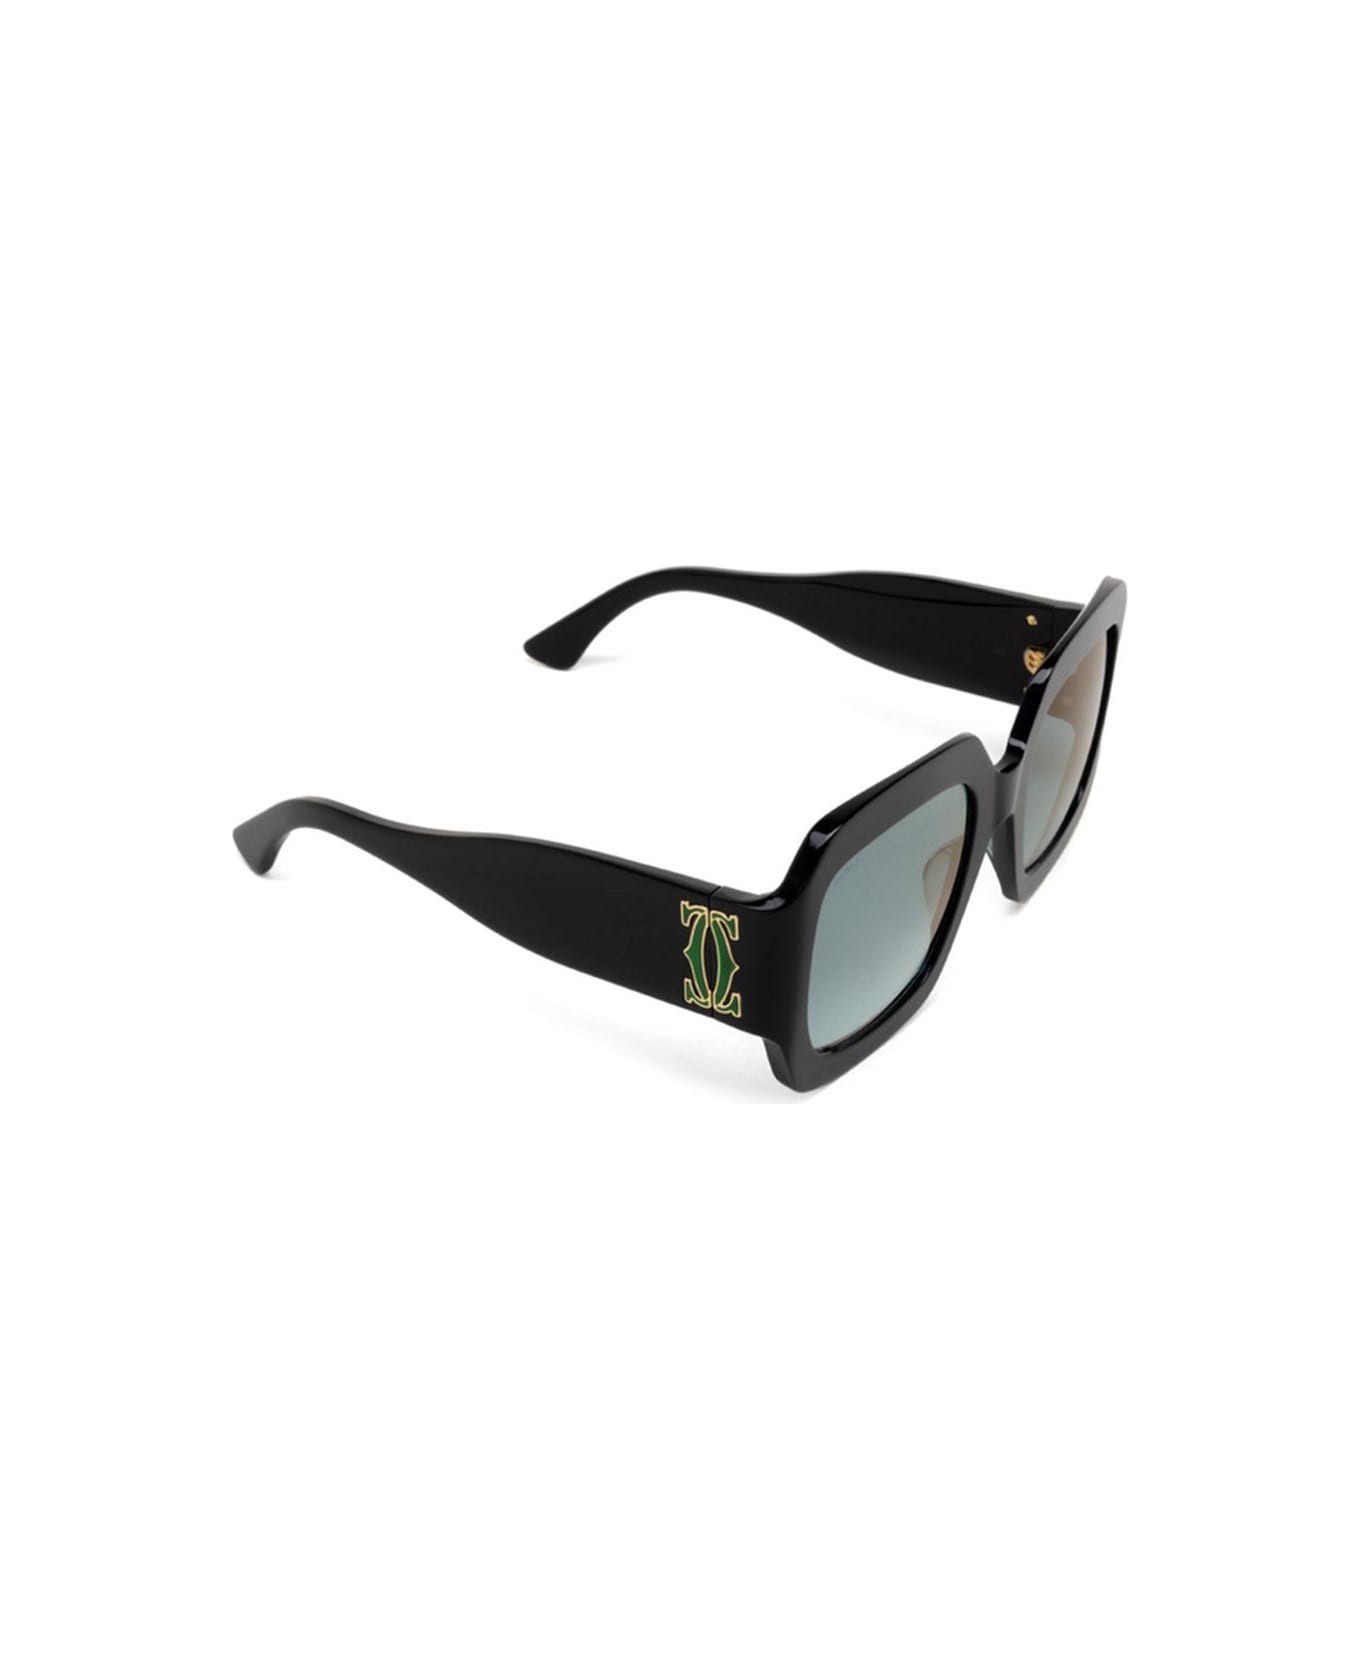 Cartier Eyewear Sunglasses - Nero/Verde サングラス